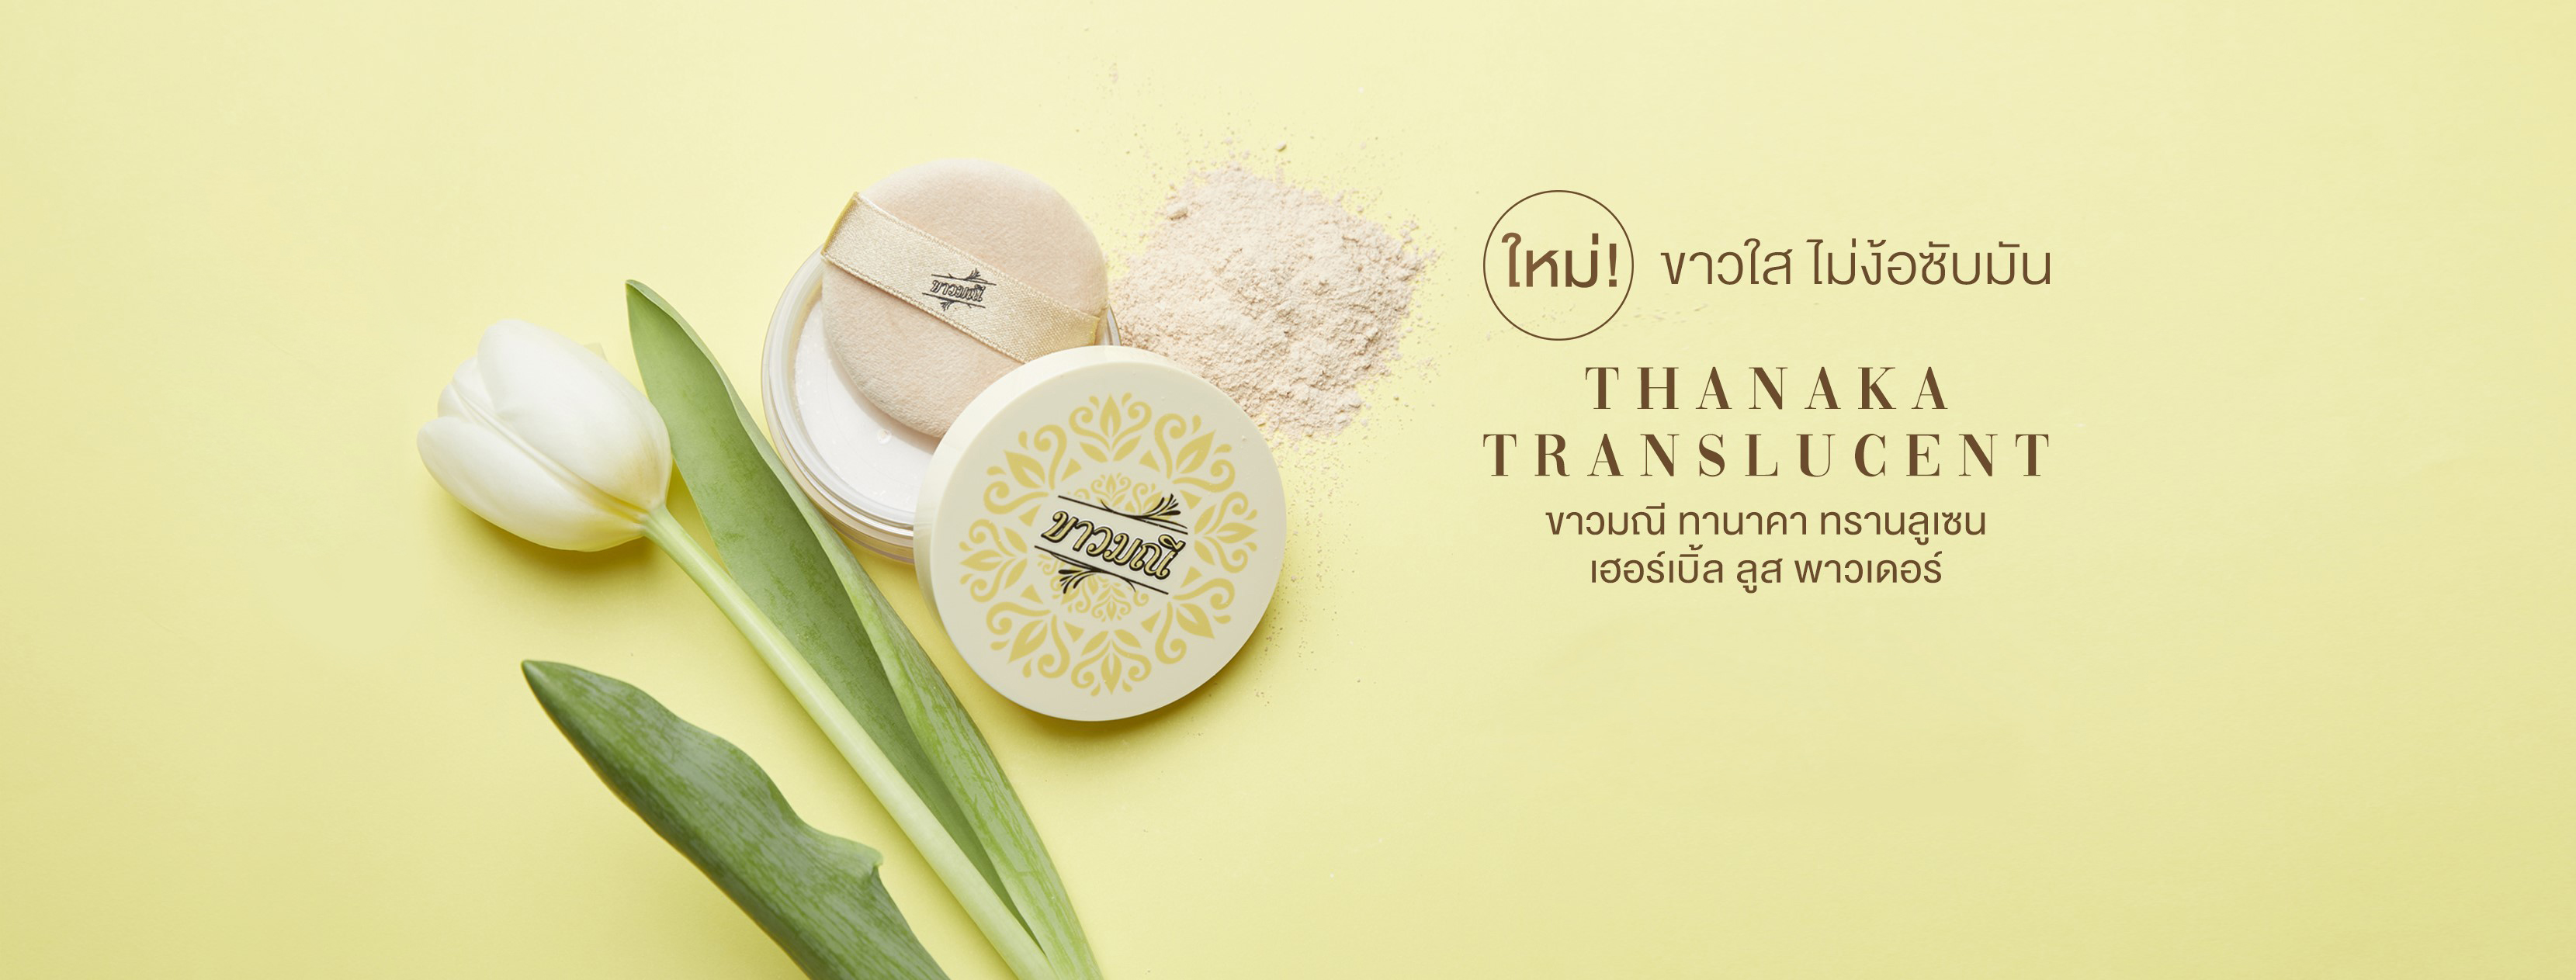 ขาวมณี Tanaka Translucent Herbal Loose Powder 